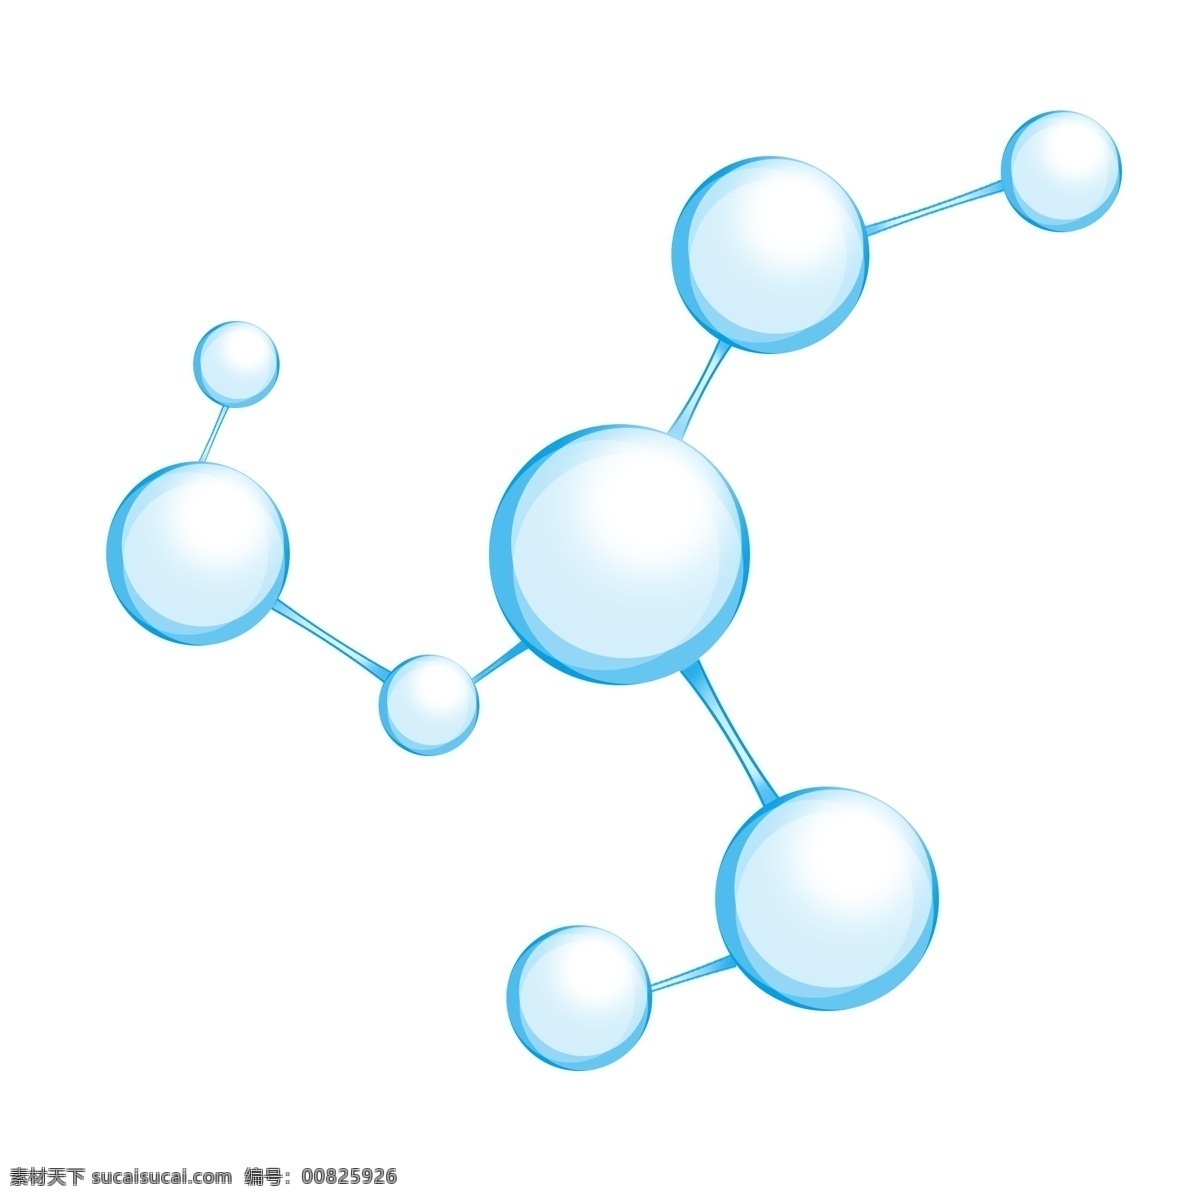 分子式 图标 元素 化学组成式 图标元素 molecular formula